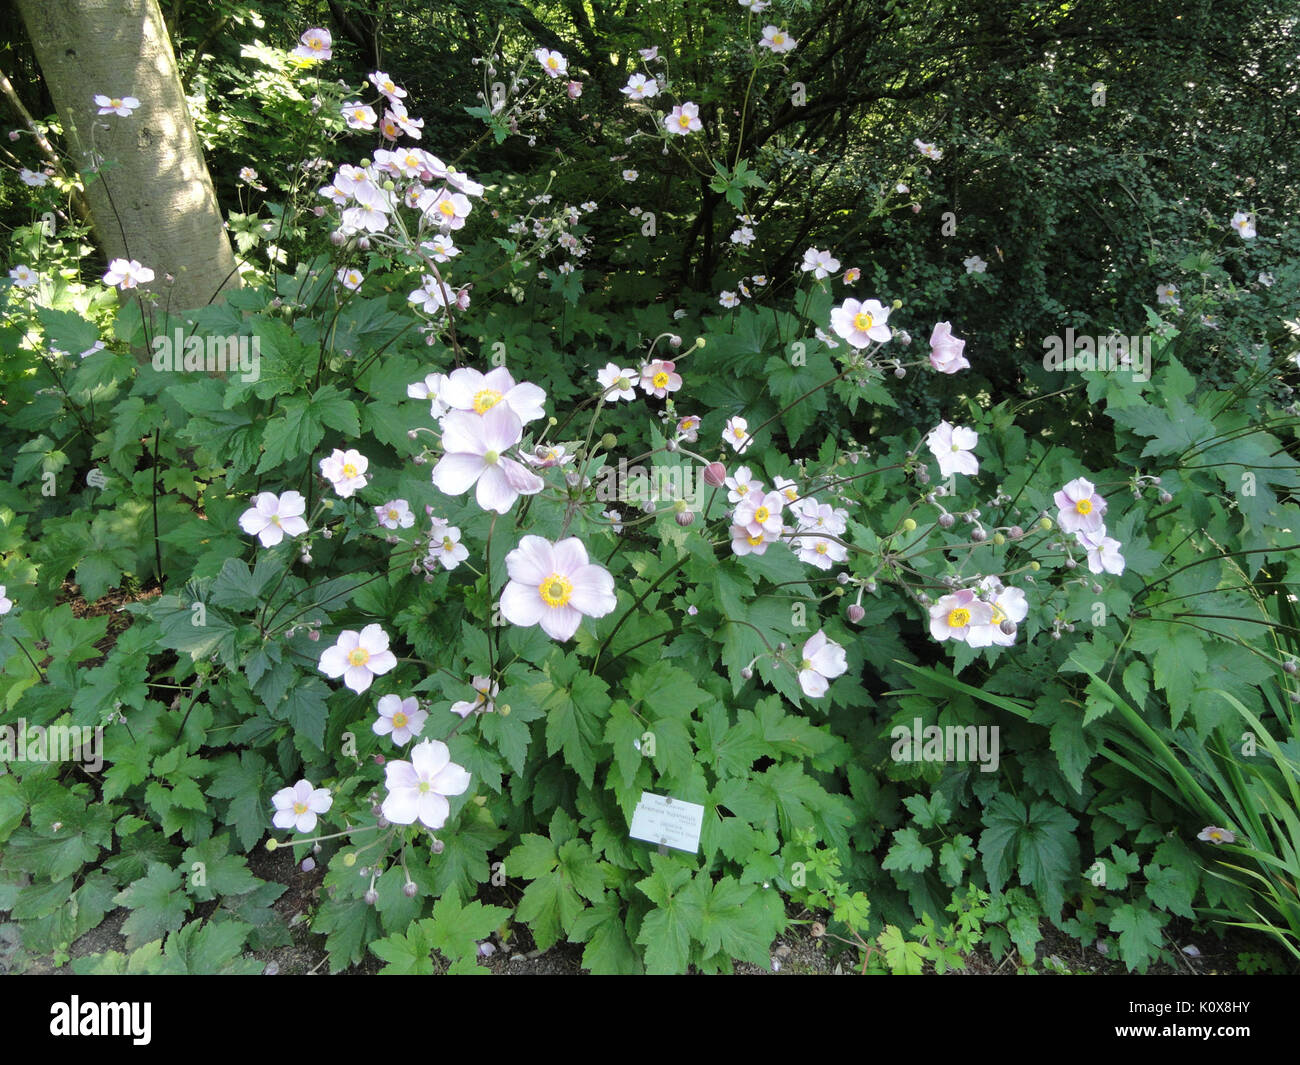 Anemone scabiosa   Botanischer Garten, Frankfurt am Main   DSC03306 Stock Photo